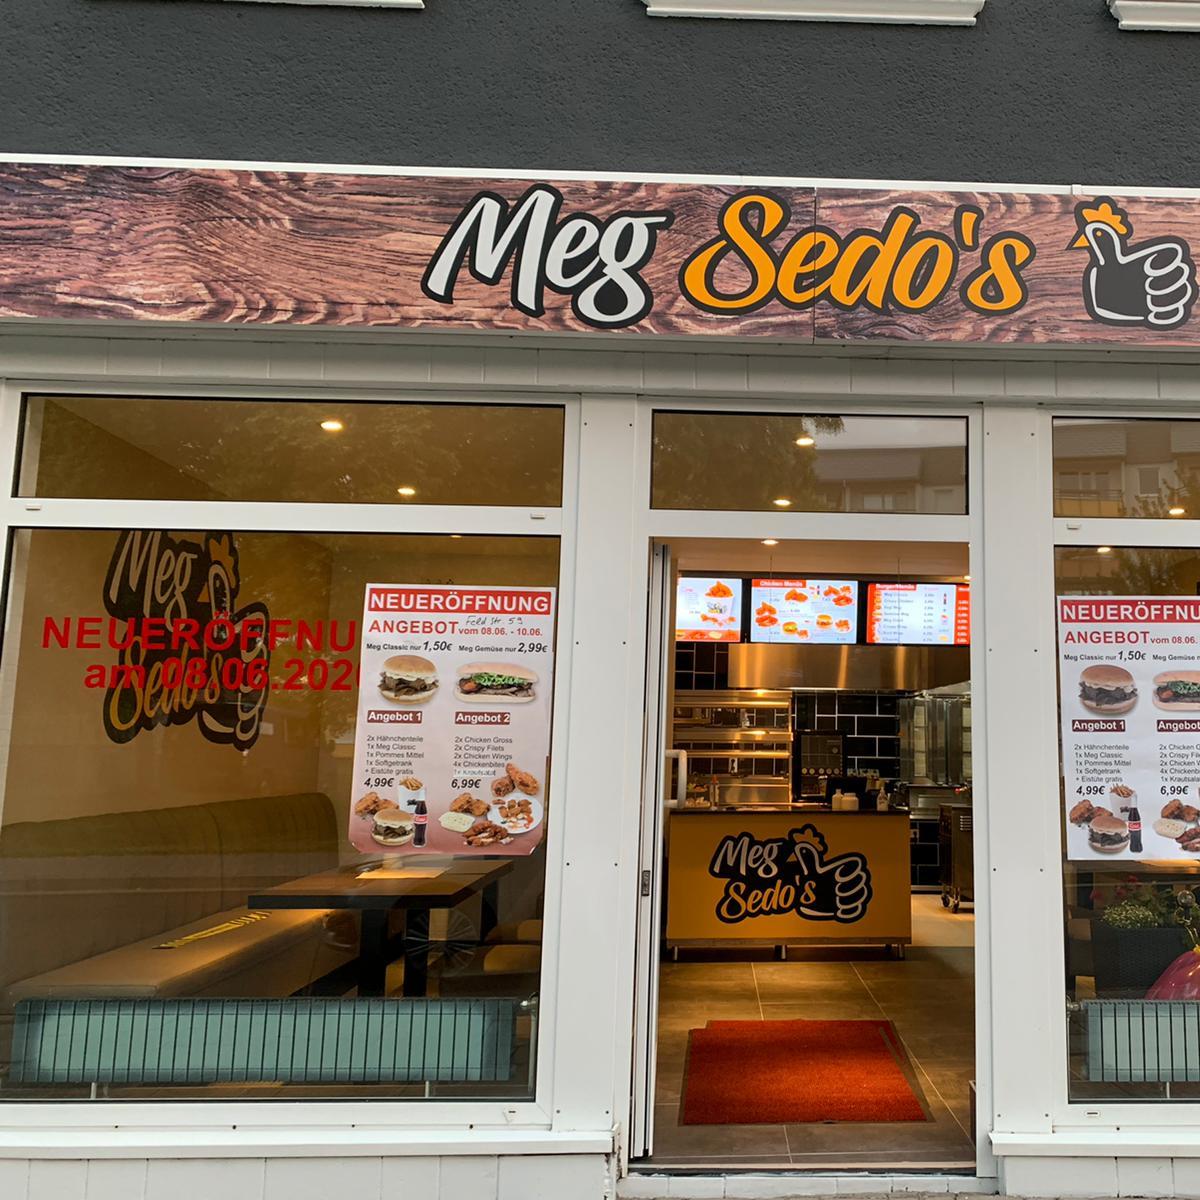 Restaurant "Meg Sedo